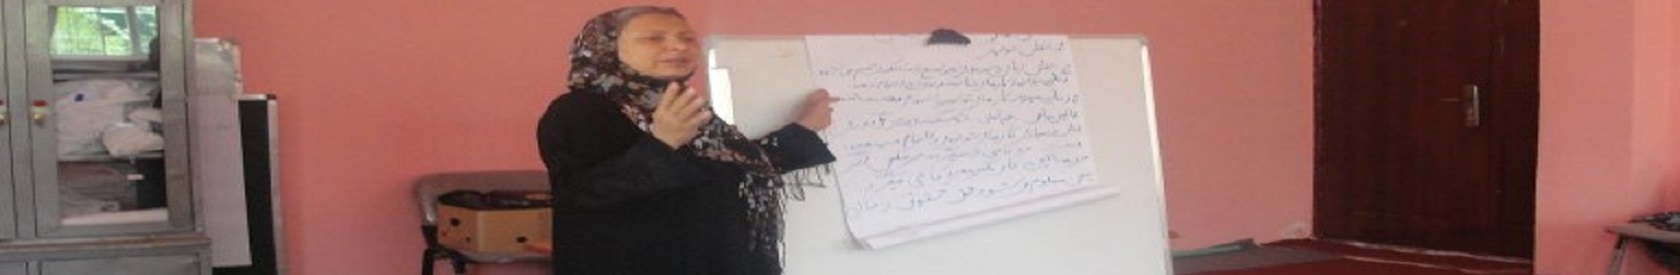 Marketing training program for 40 refugee women